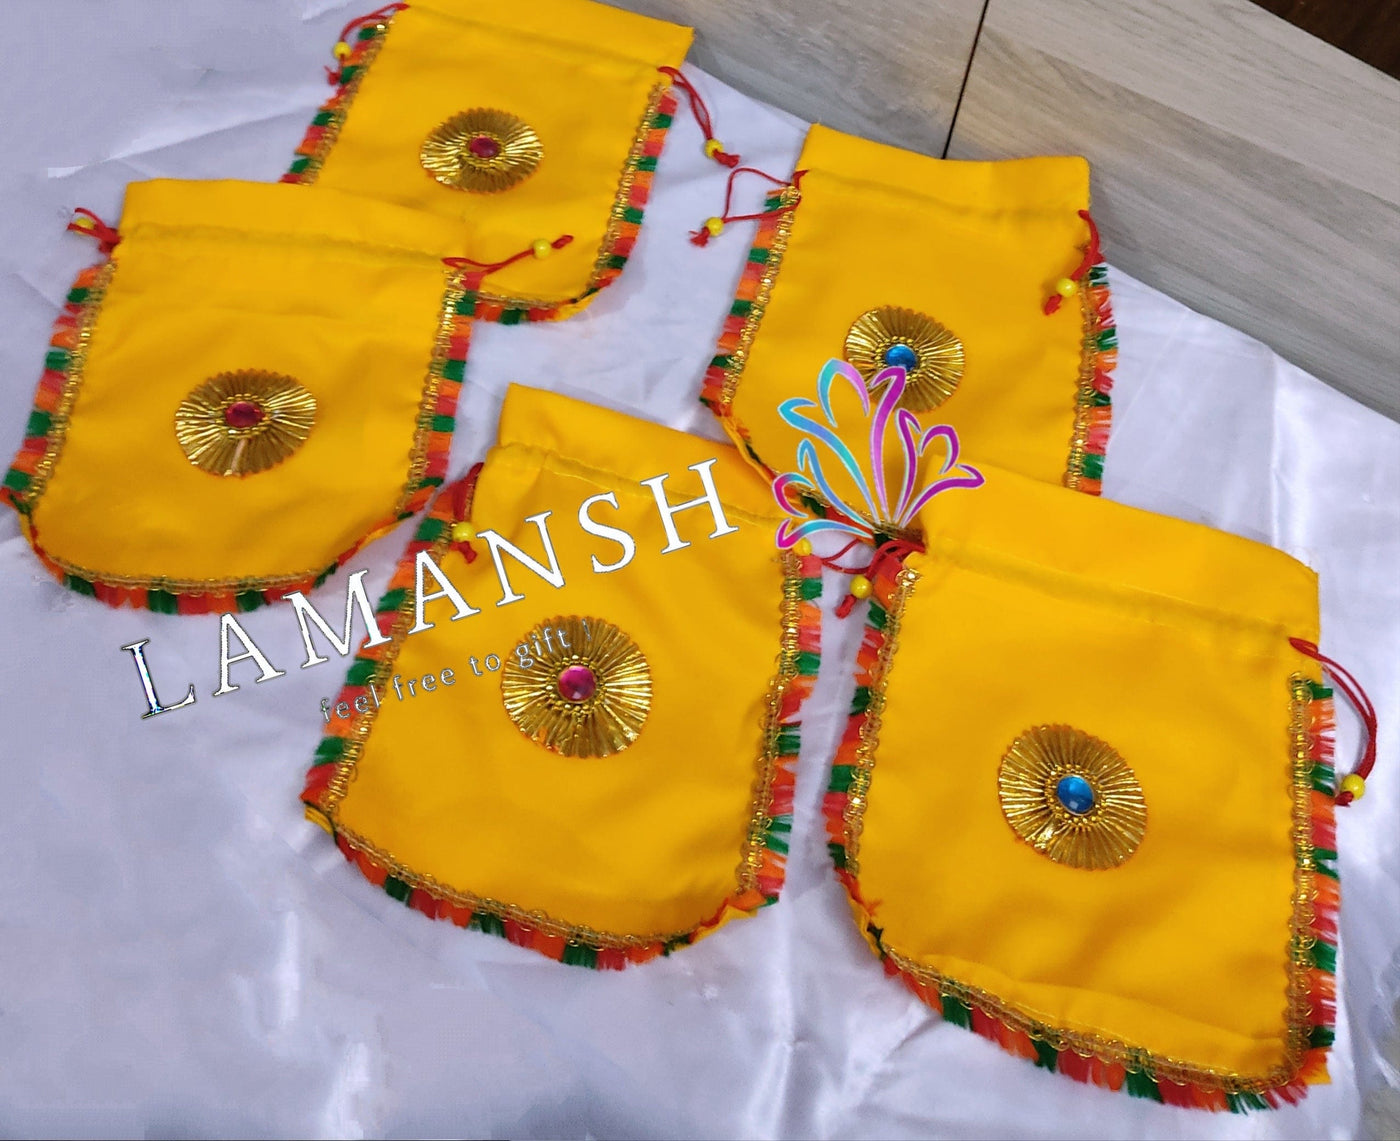 LAMANSH ® Women's Potli Bag LAMANSH Set of 10 (7*9 inch) Rajasthani Designer Potli Bags for Giveaways / Perfect for Gifting